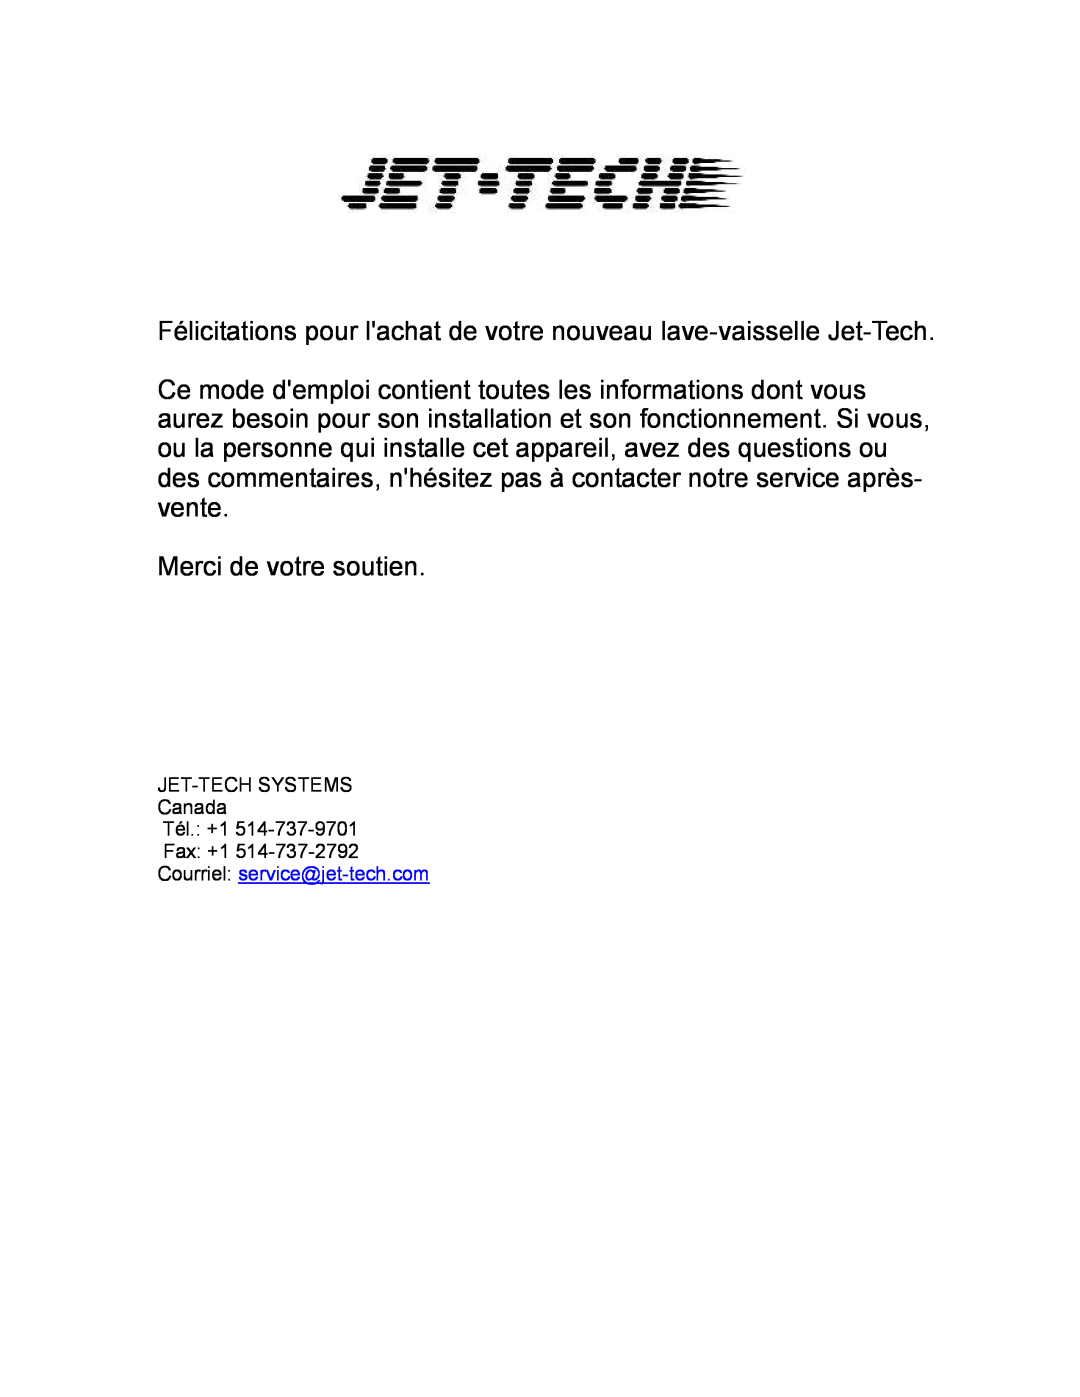 Jettech Metal Products FX-44 operation manual Félicitations pour lachat de votre nouveau lave-vaisselle Jet-Tech 